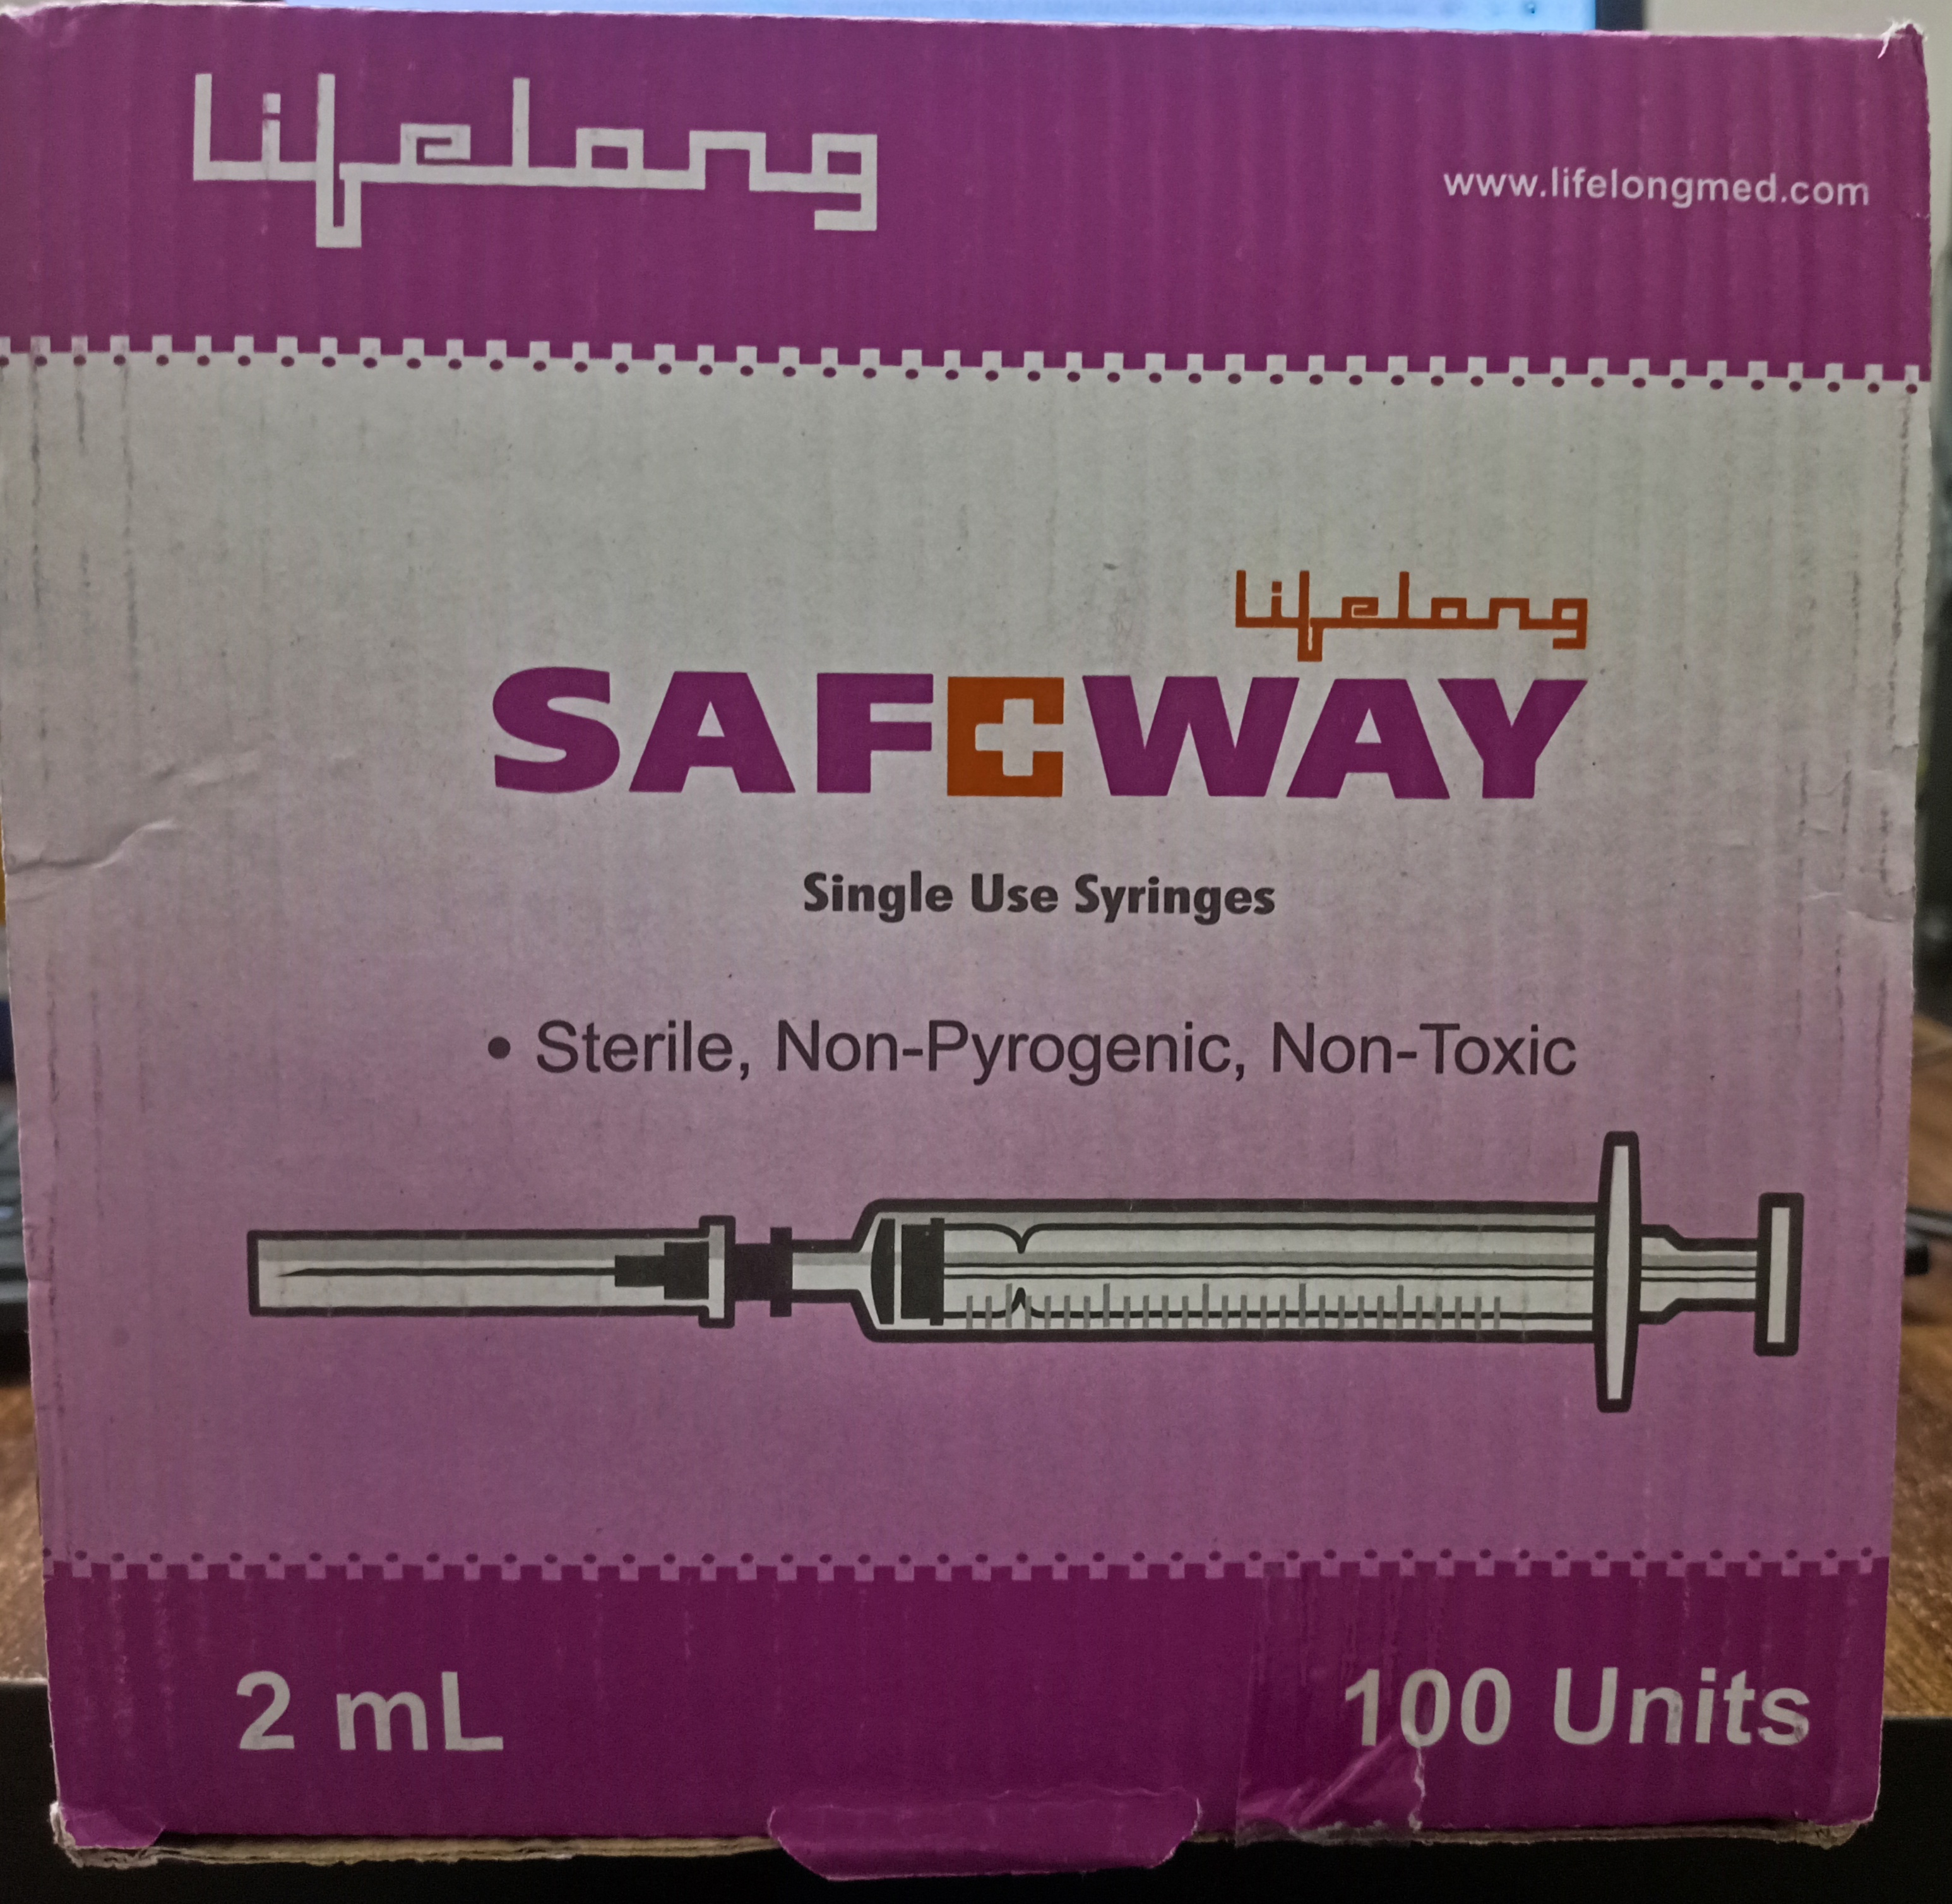 Lifelong Safeway Syringe 2ml (100 Units)